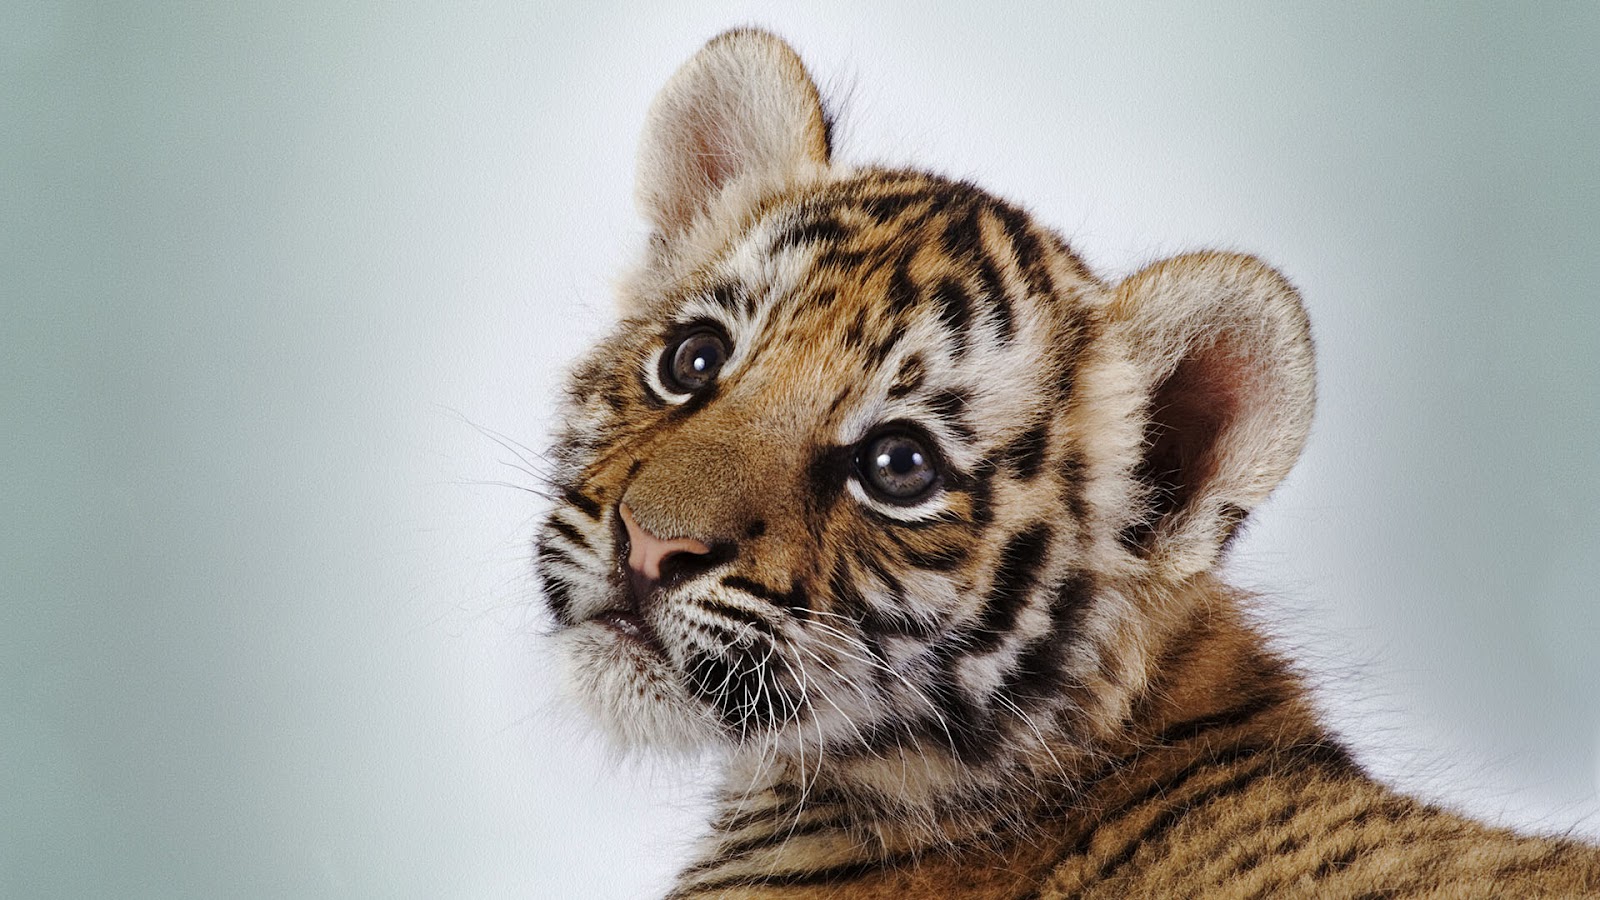 http://4.bp.blogspot.com/-Mlzj__EthWM/UBh88MFjaLI/AAAAAAAAJTM/RWAUs7P1FHA/s1600/cute-tiger-cub.jpg